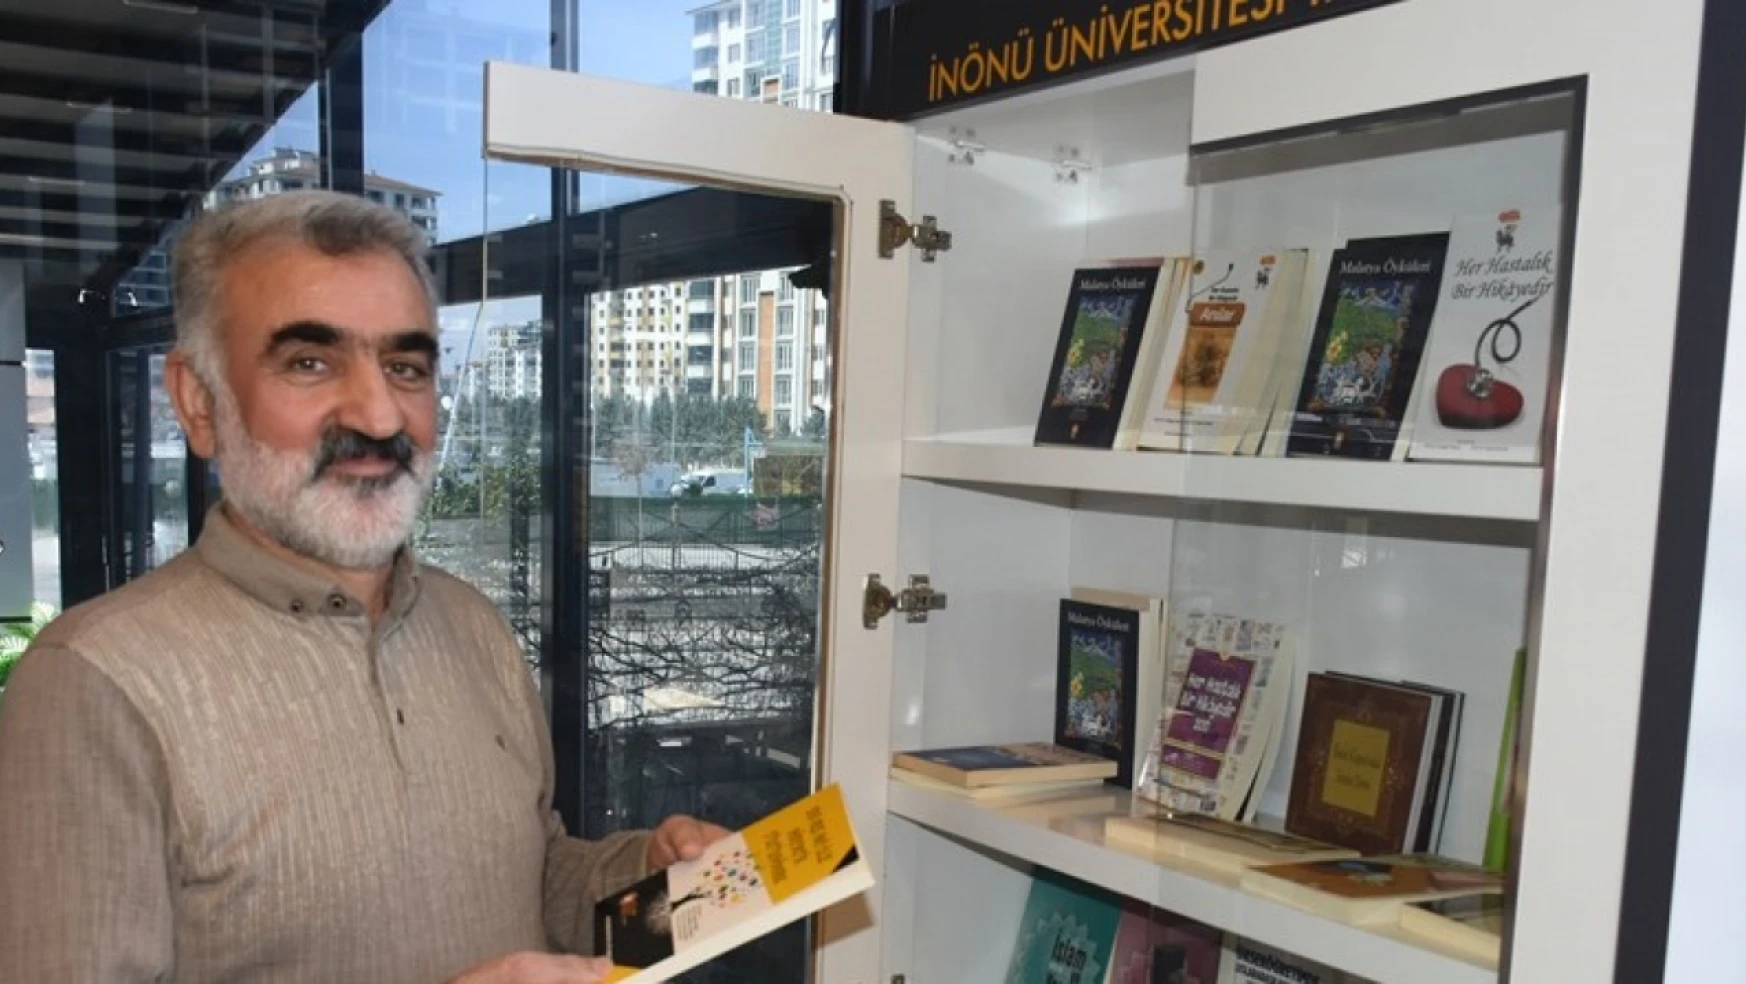 Malatya'da kitaplık yaptıran işletmelerin kitapları üniversiteden sağlanıyor